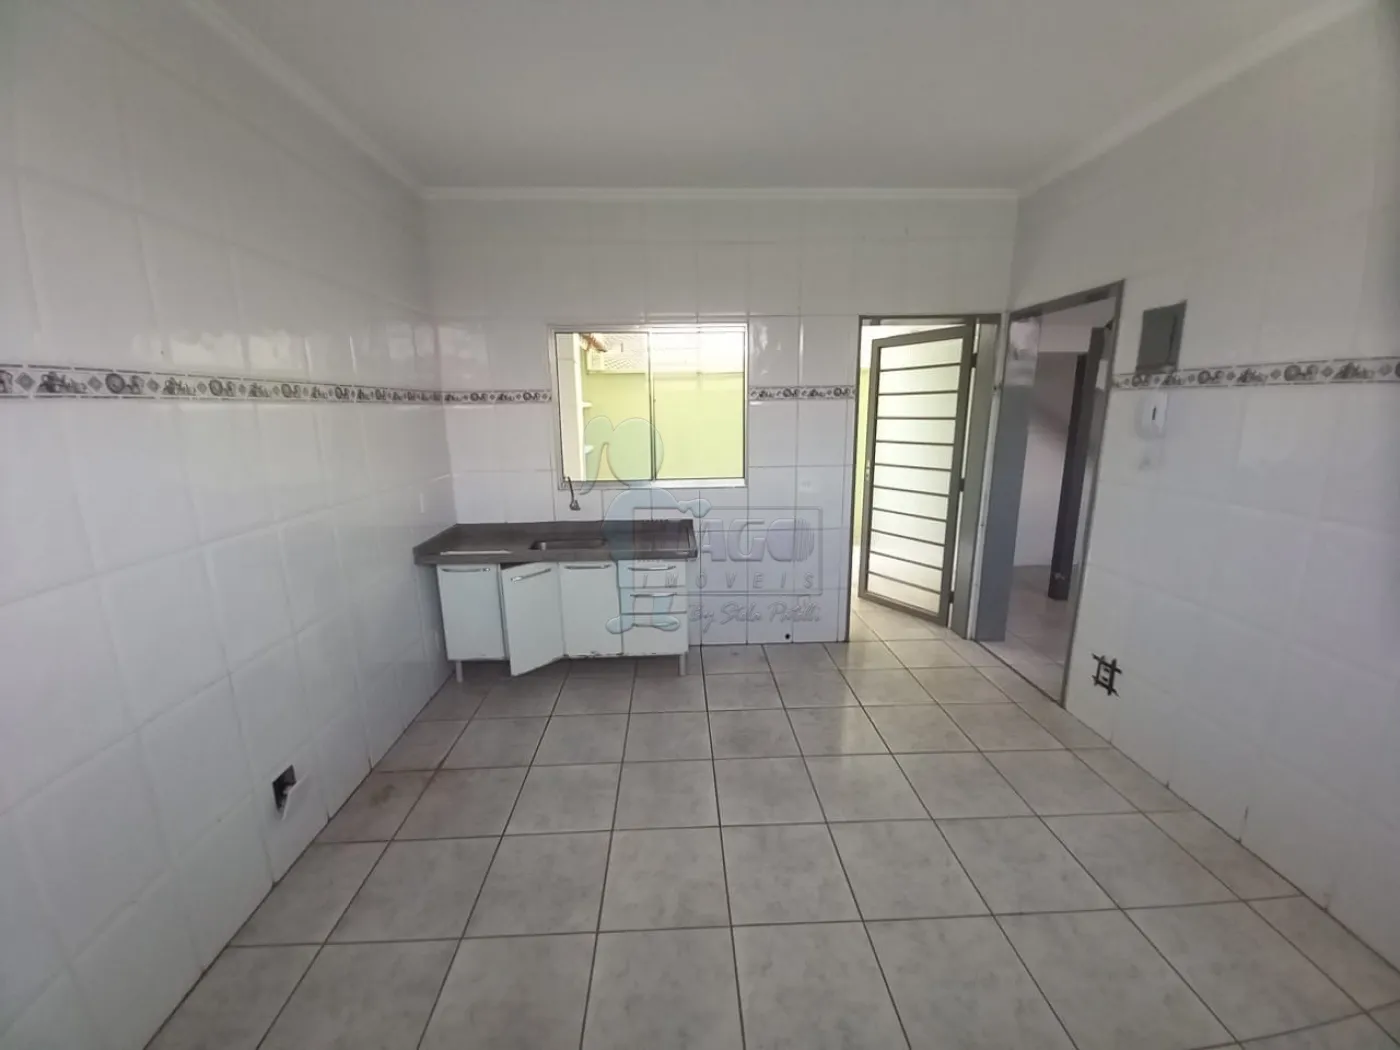 Alugar Apartamento / Duplex em Ribeirão Preto R$ 750,00 - Foto 4